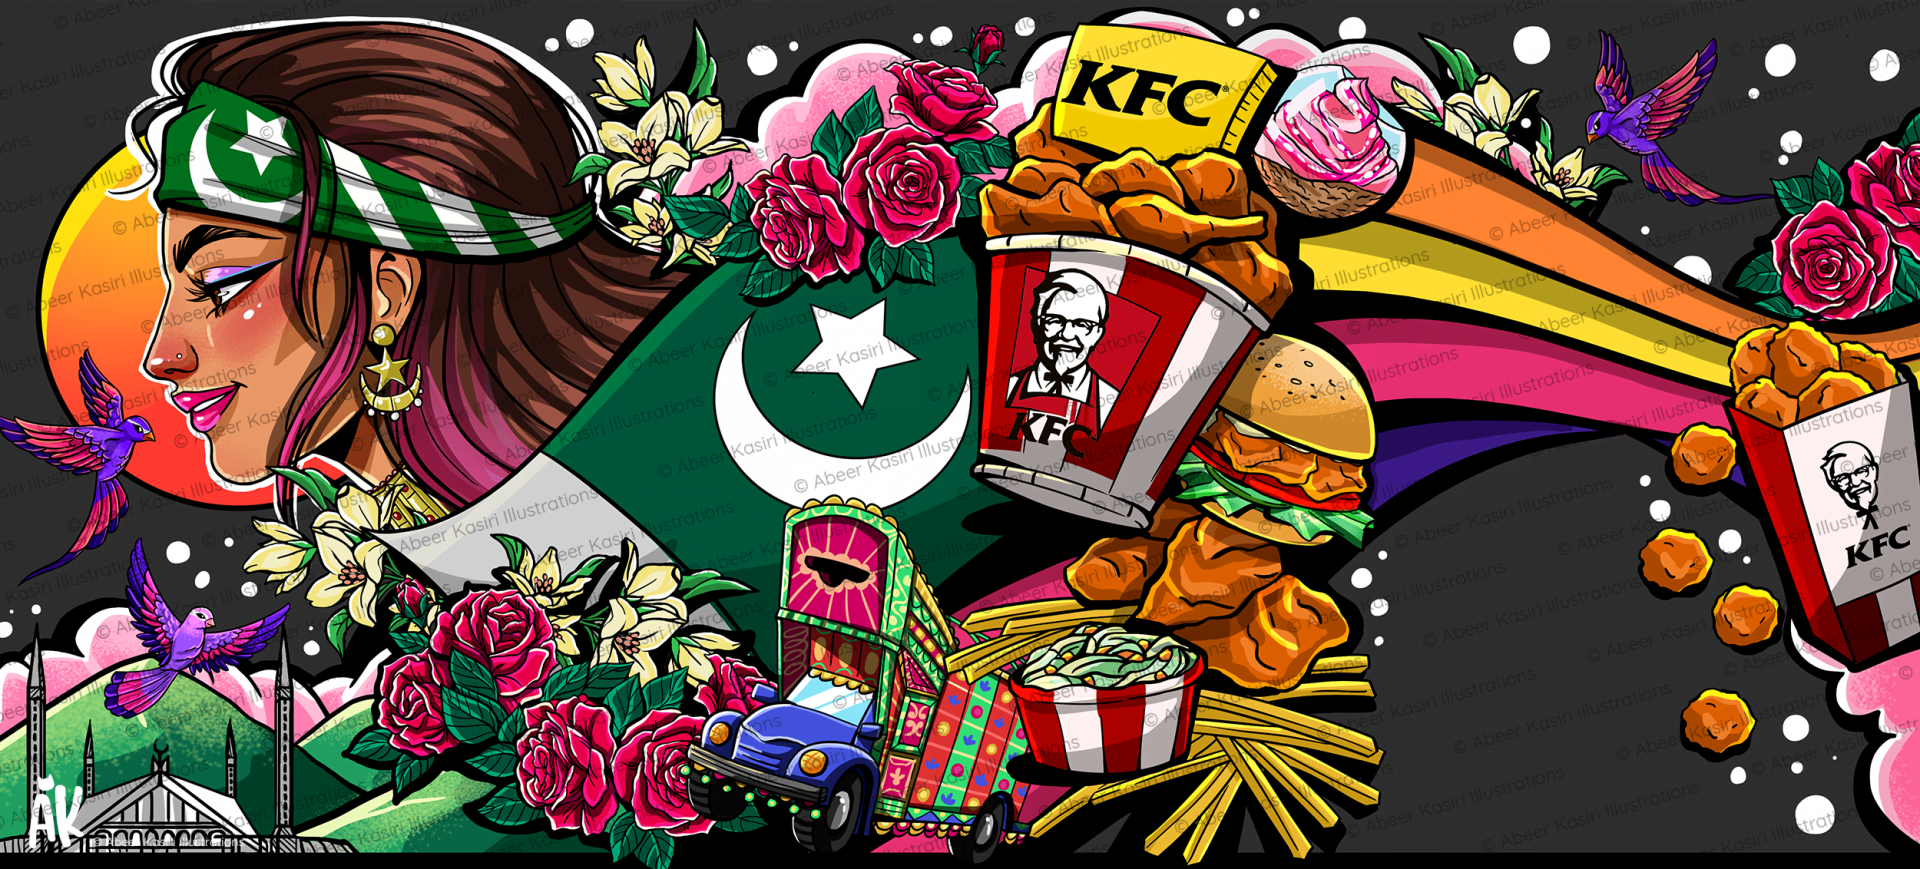 KFC Wall Mural Islamabad